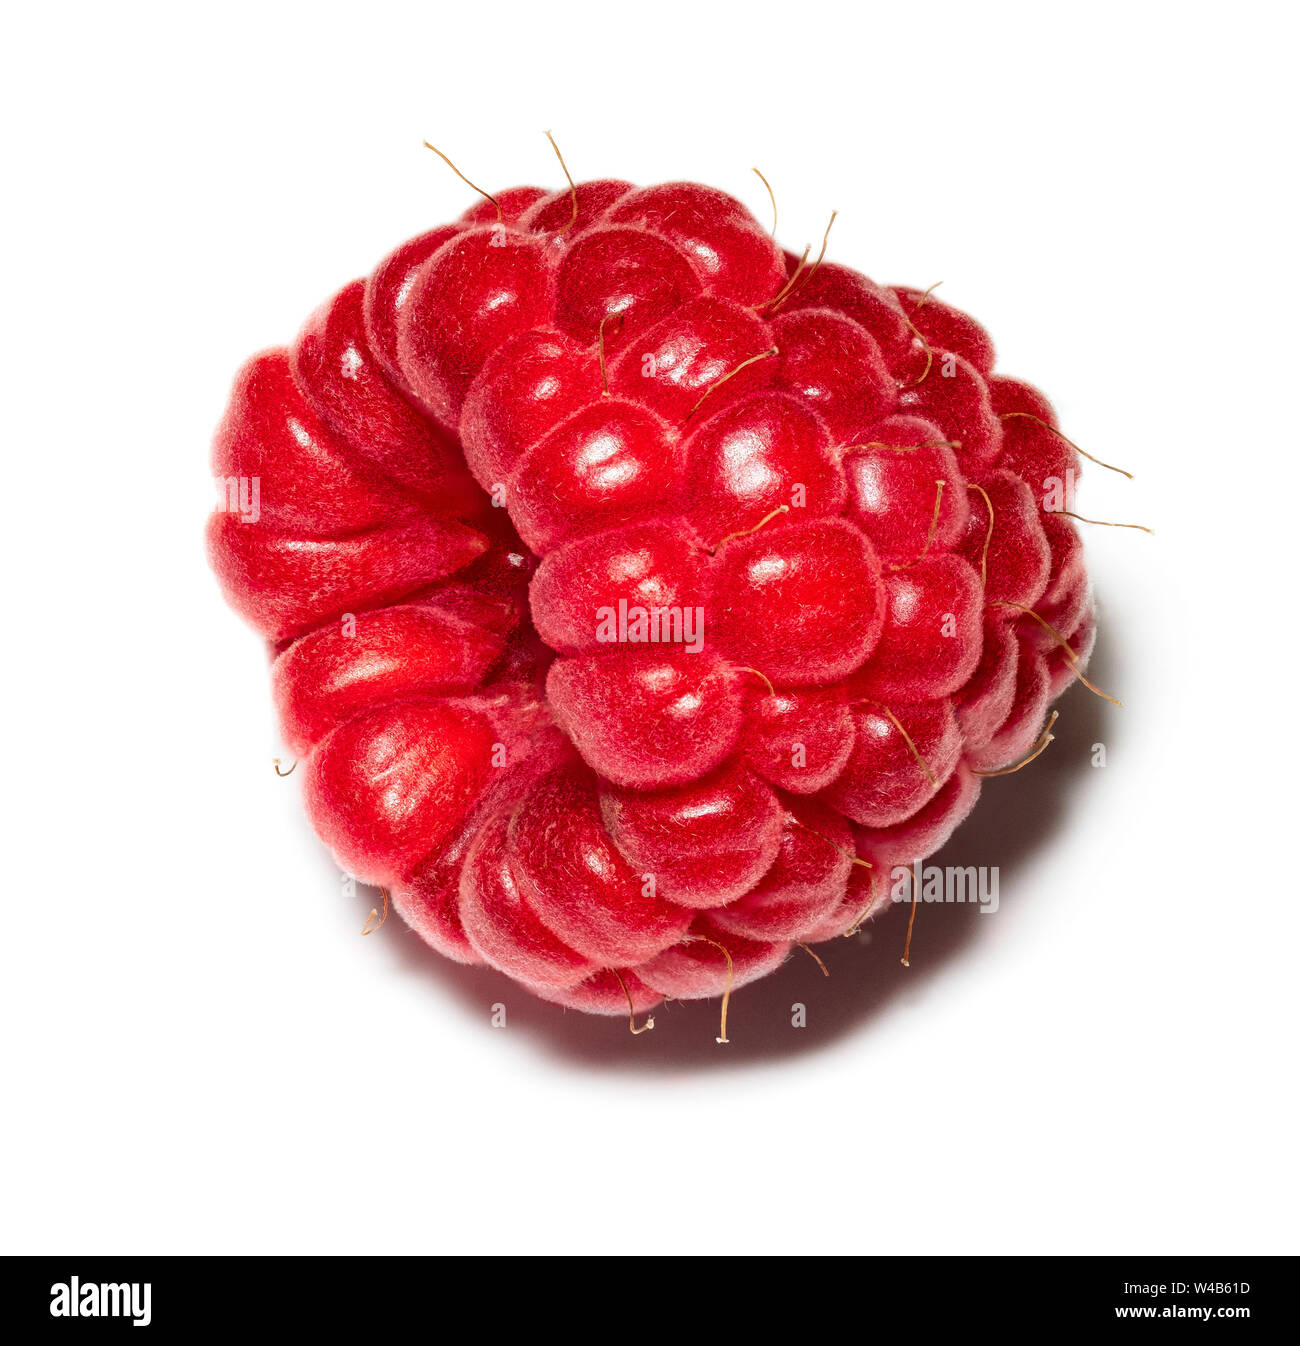 Makro Bild eines frisch gepflückte rasberry - Fokus gestapelt Foto Stockfoto